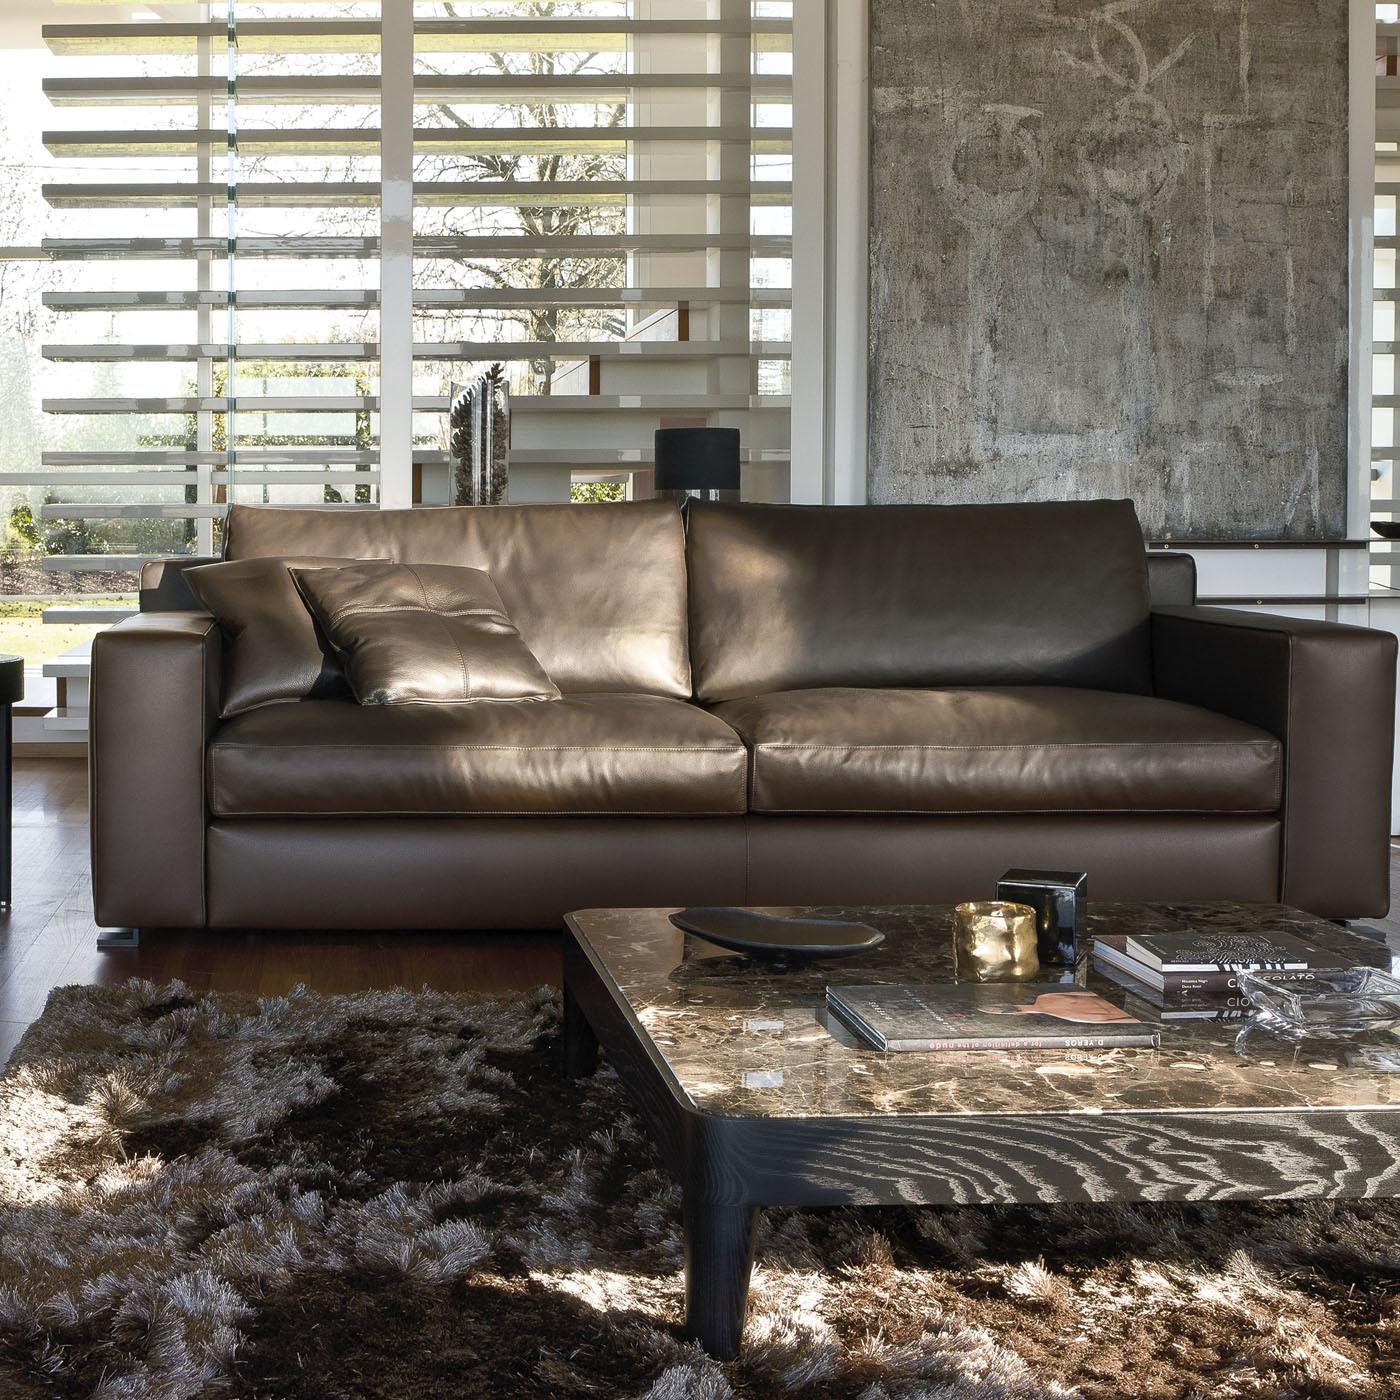 Gepolstert mit weichem, mokkafarbenem Leder (Fb. Cristal 25 Kat. Anilina) mit passender Naht, die dem minimalistischen Design einen Hauch von Luxus verleiht, ist dieses Sofa ein Blickfang in jeder Einrichtung. Das solide und geradlinige Design steht